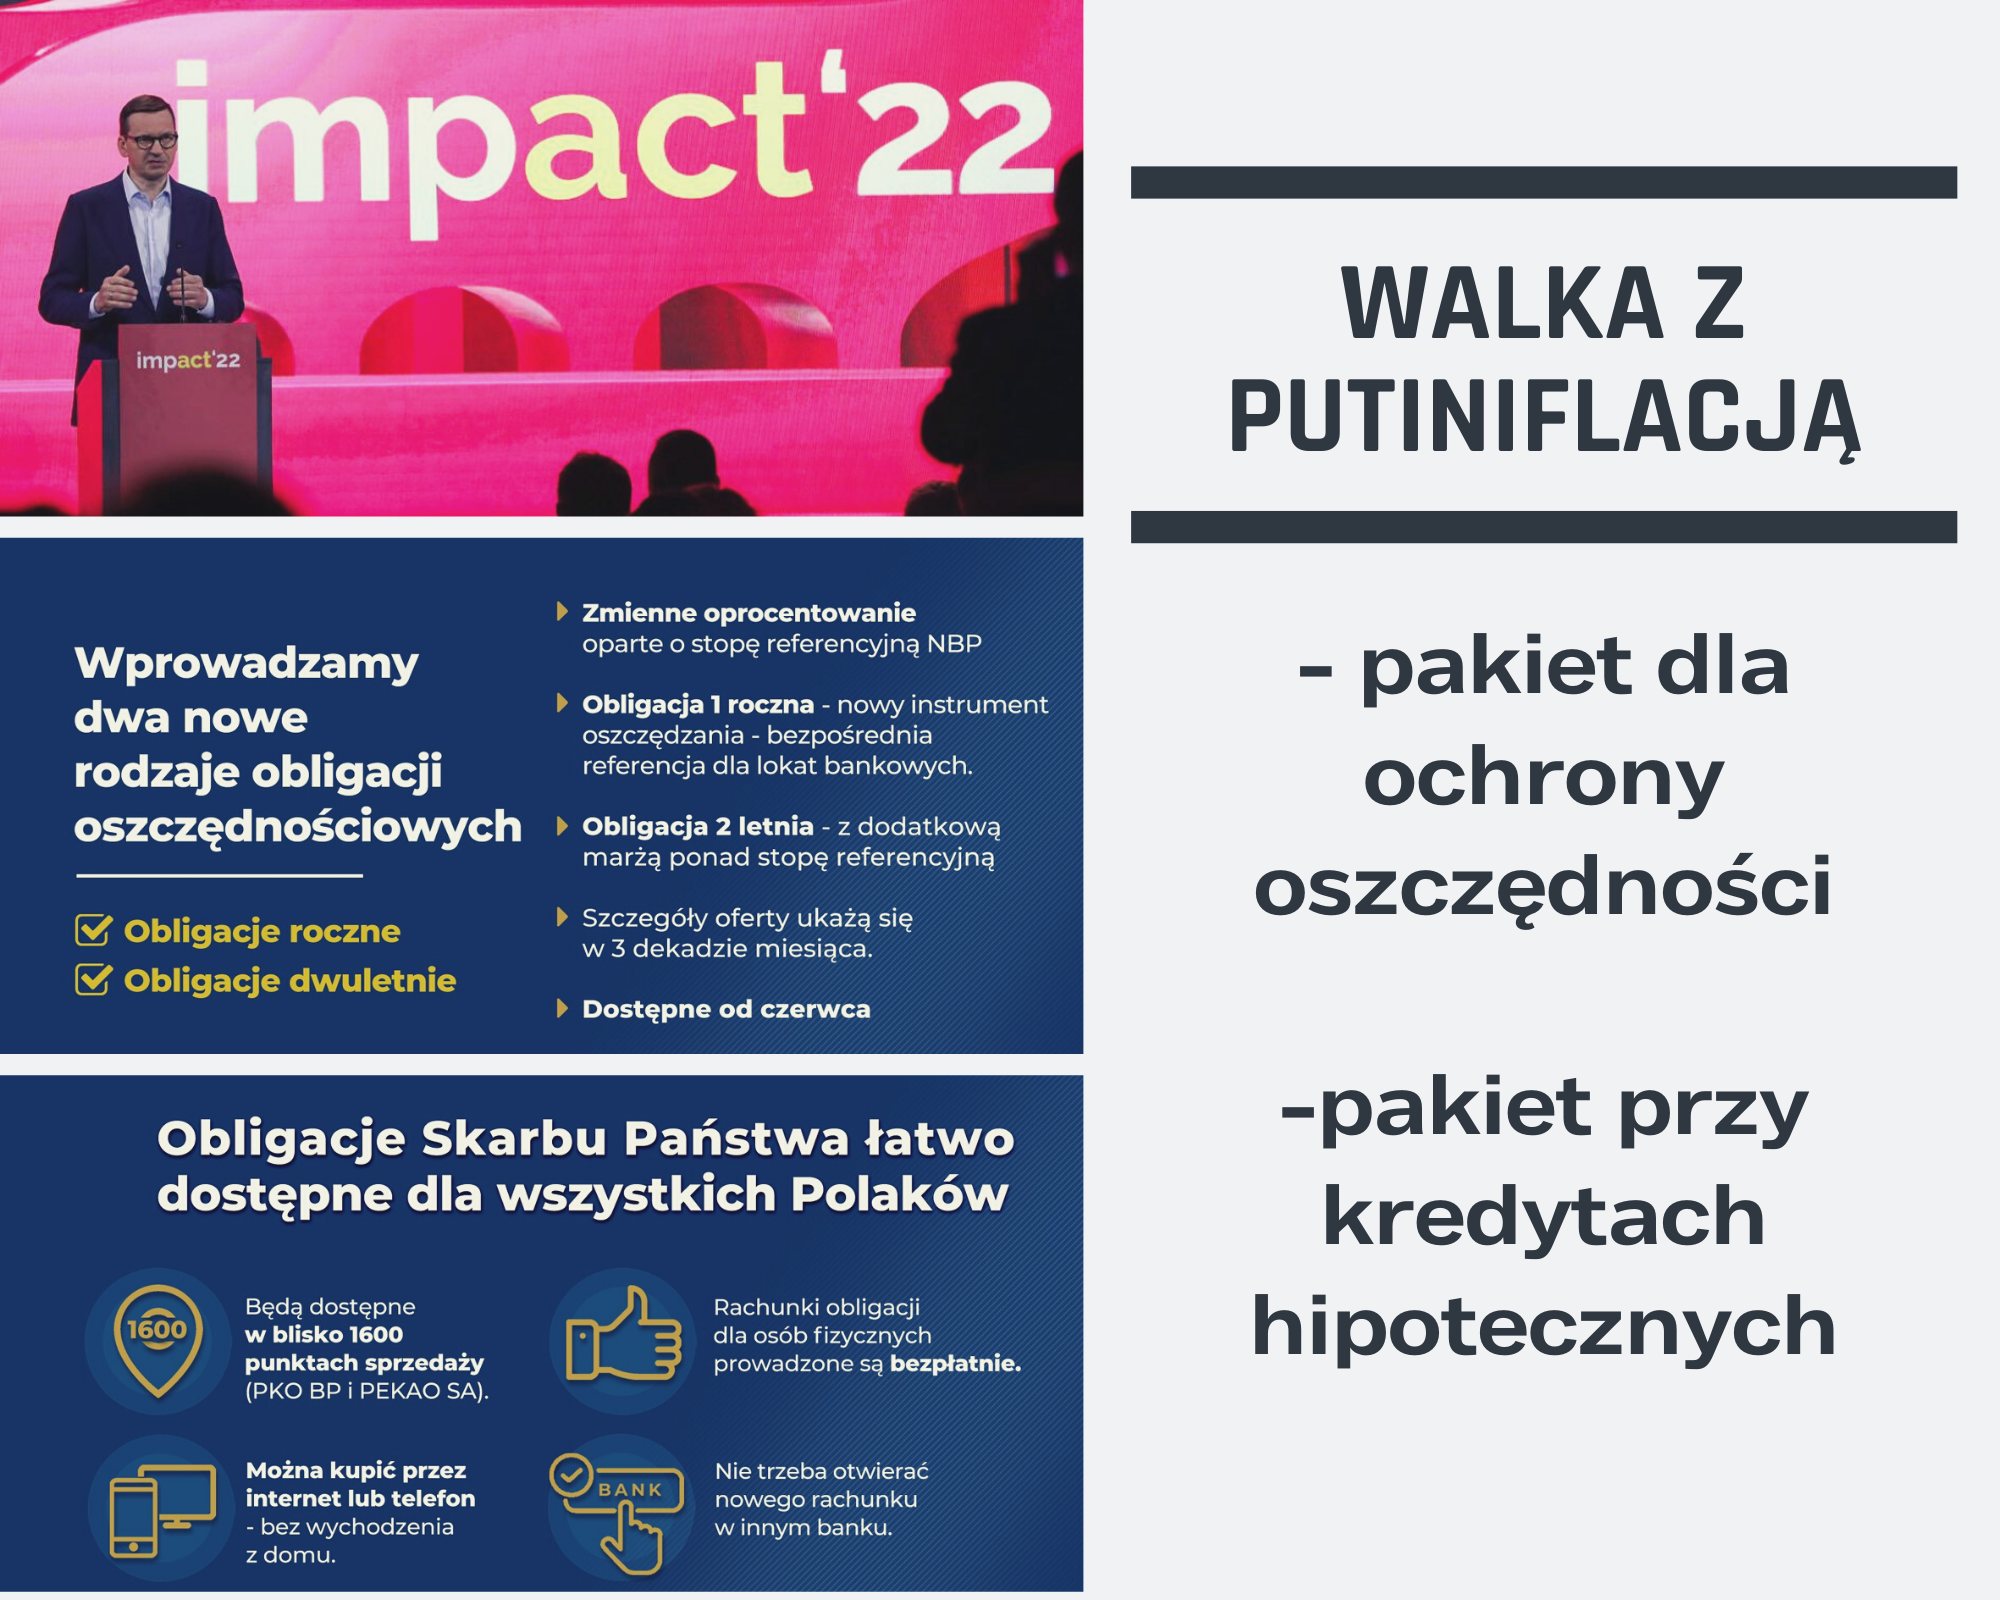 Premier Mateusz Morawiecki zapowiedział kolejny pakiet wsparcia w walce z putinflacją. To kolejne rozwiązania, które mają uchronić Polaków przed skutkami globalnego trendu wzrostu cen.